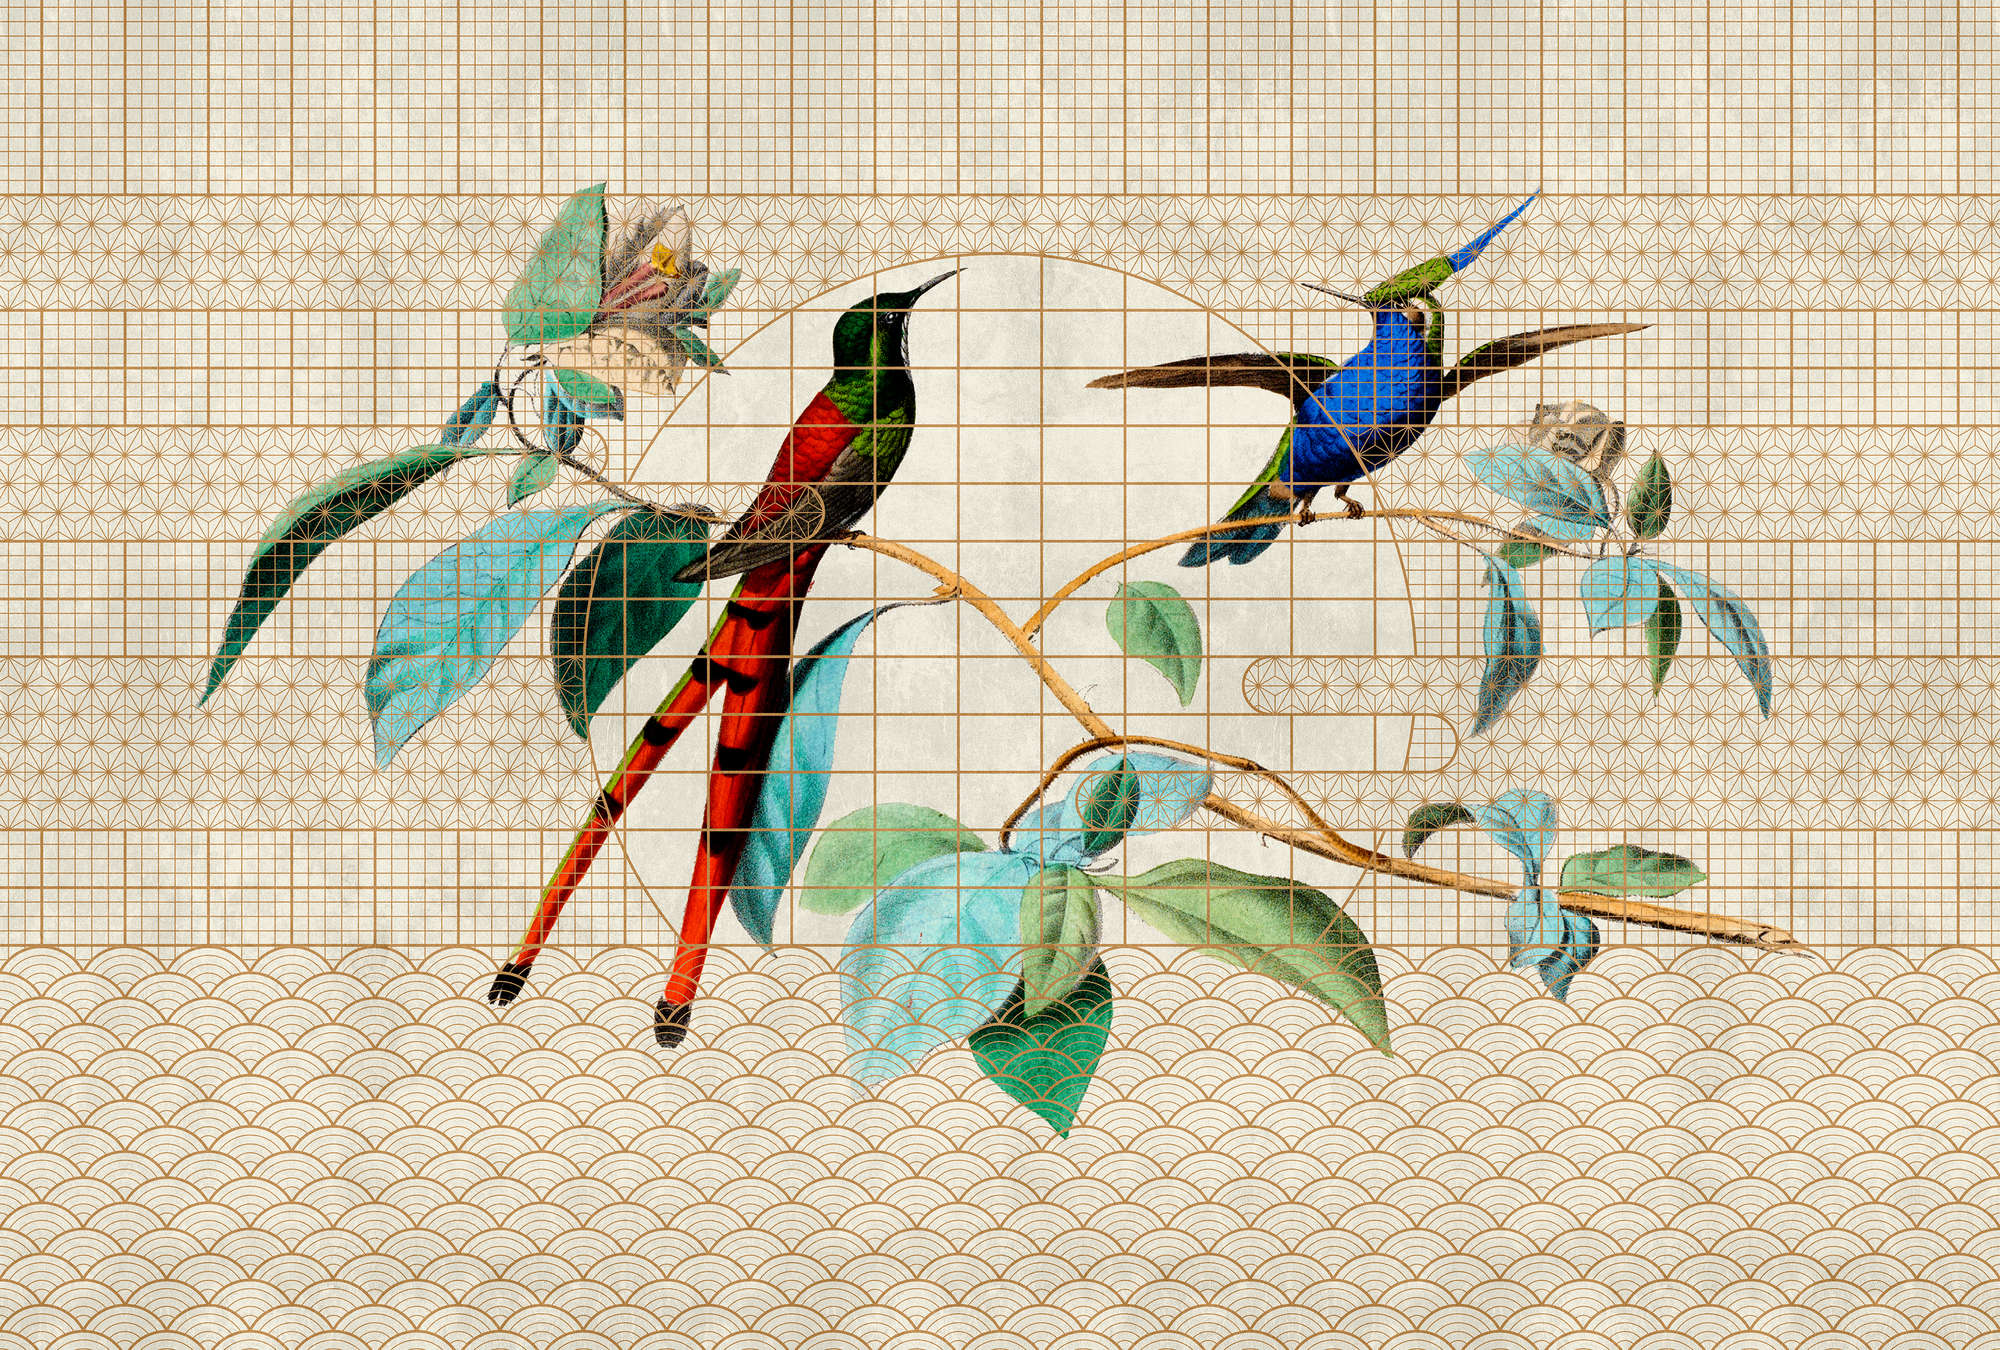             Volière 2 - Oiseaux Papier peint oiseaux chanteurs dans une cage dorée
        